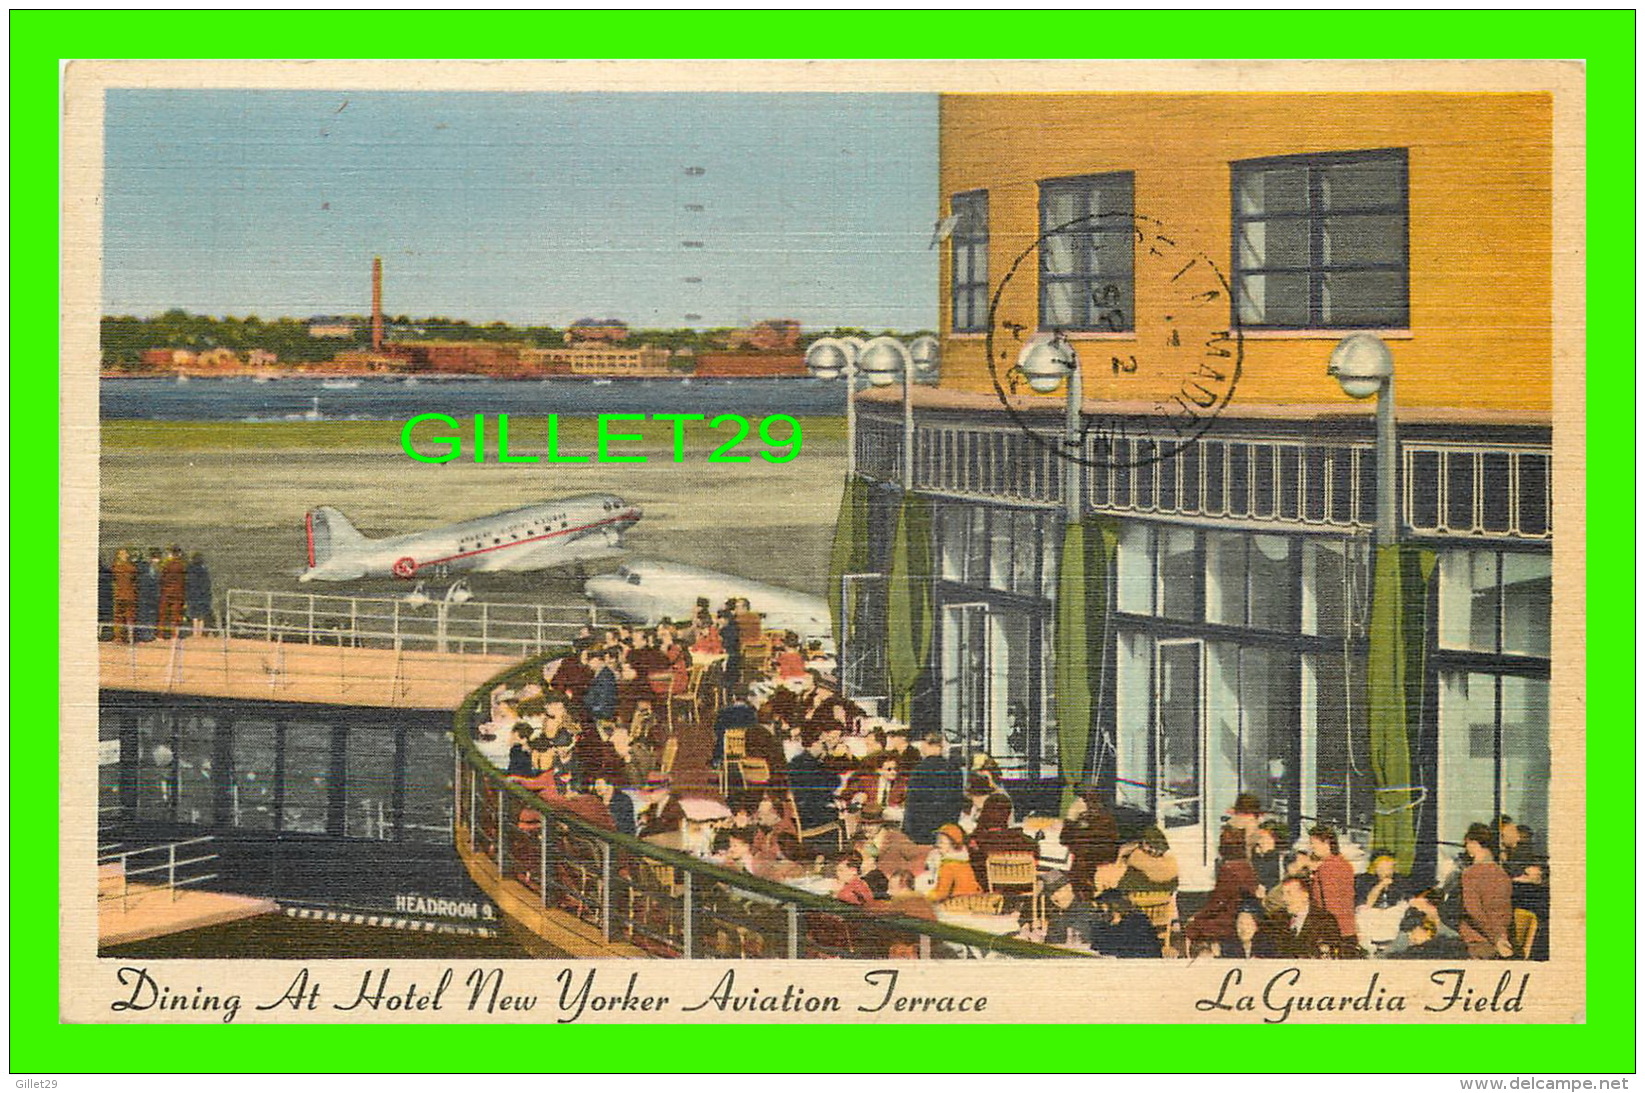 LA GUARDIA FIELD, NY - DINING AT HOTEL NEW YORKER AVIATION TERRACE - TRAVEL IN 1947 - - Aeropuertos